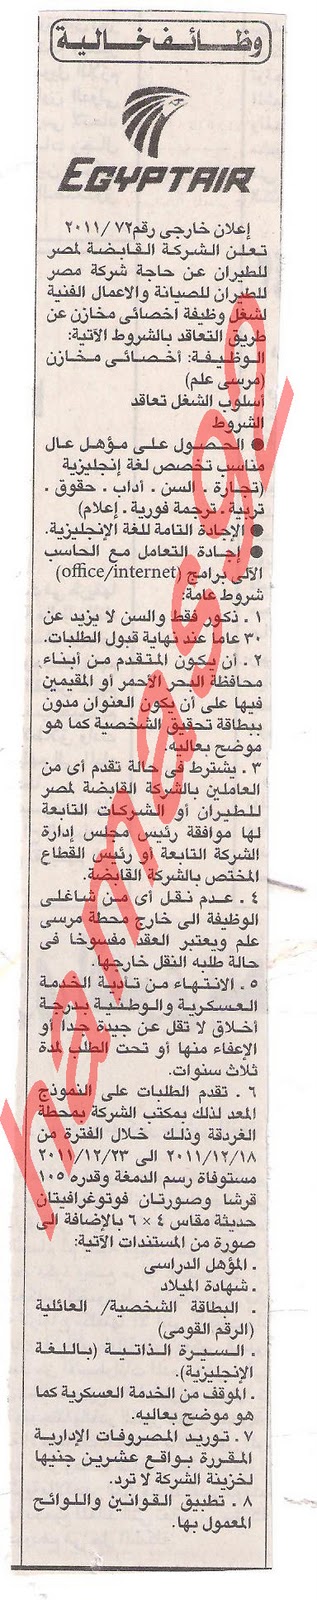 وظائف جريدة الاهرام الجمعة 9\12\2011 , الجزء الثالث  Picture+021